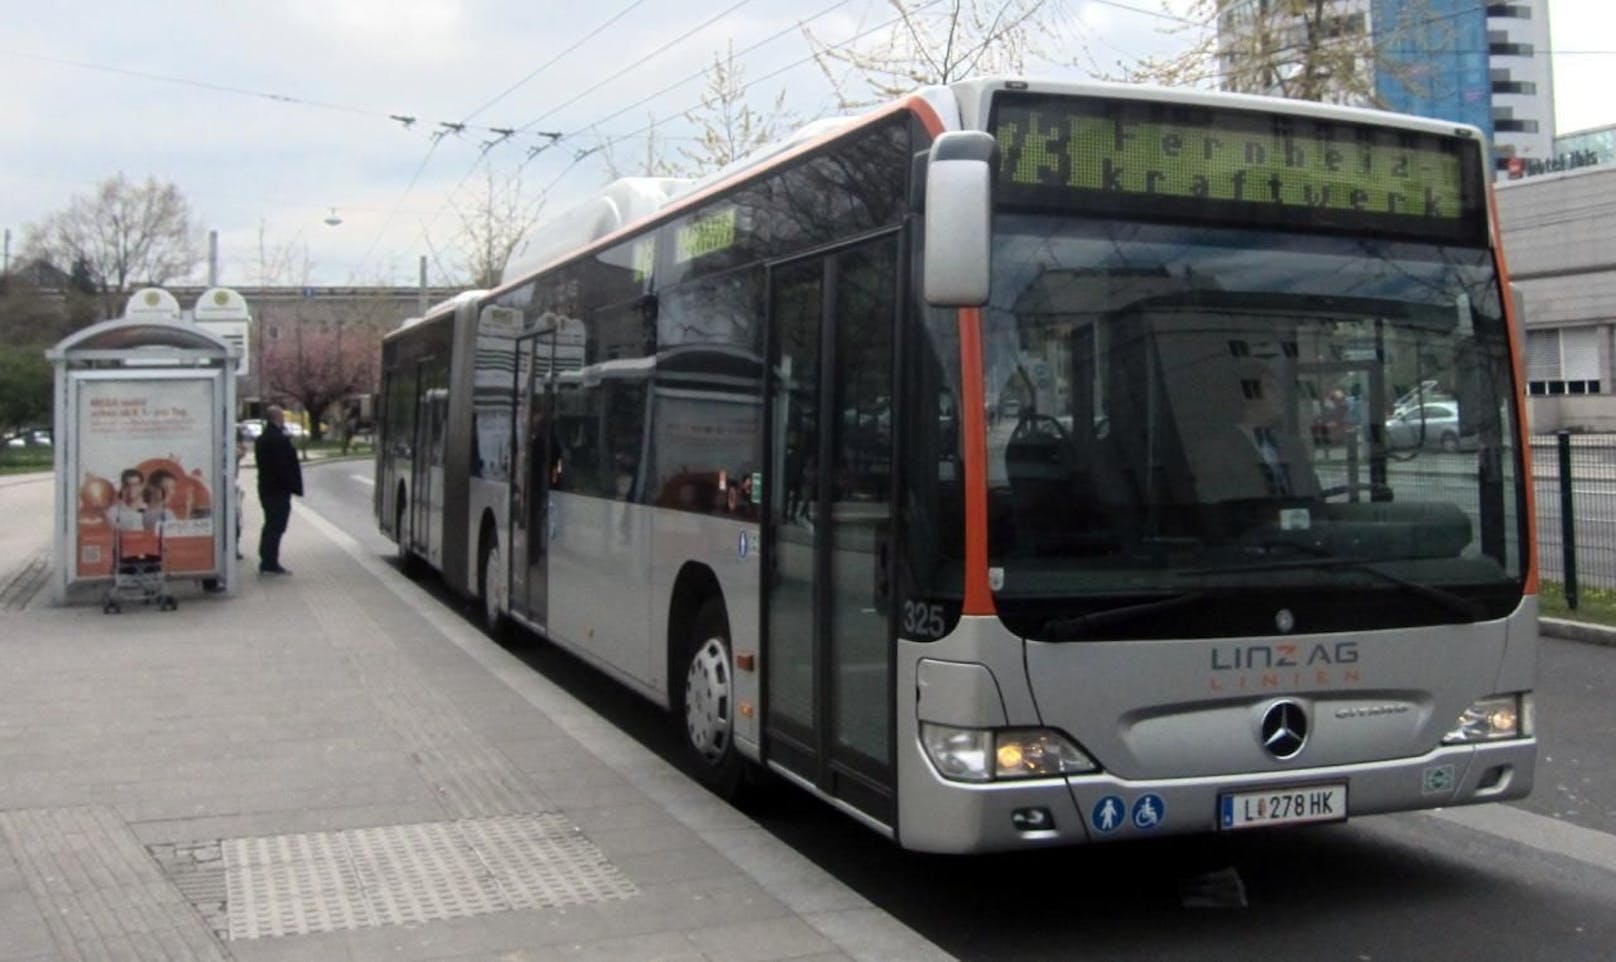 In einem Bus in Linz passierte der schockierende Vorfall.